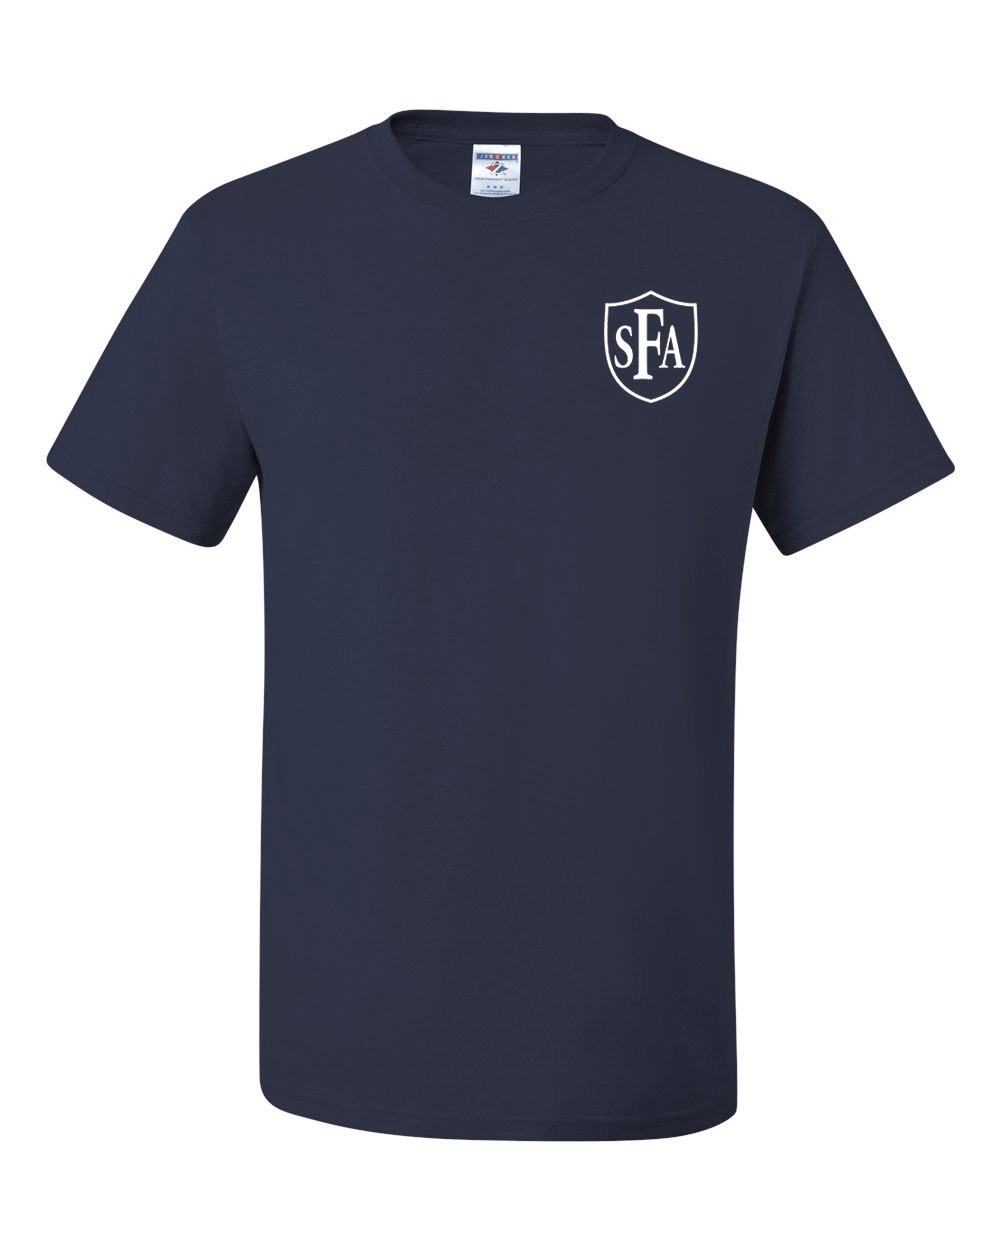 SFA Navy S/S Gym T-Shirt w/ School Logo